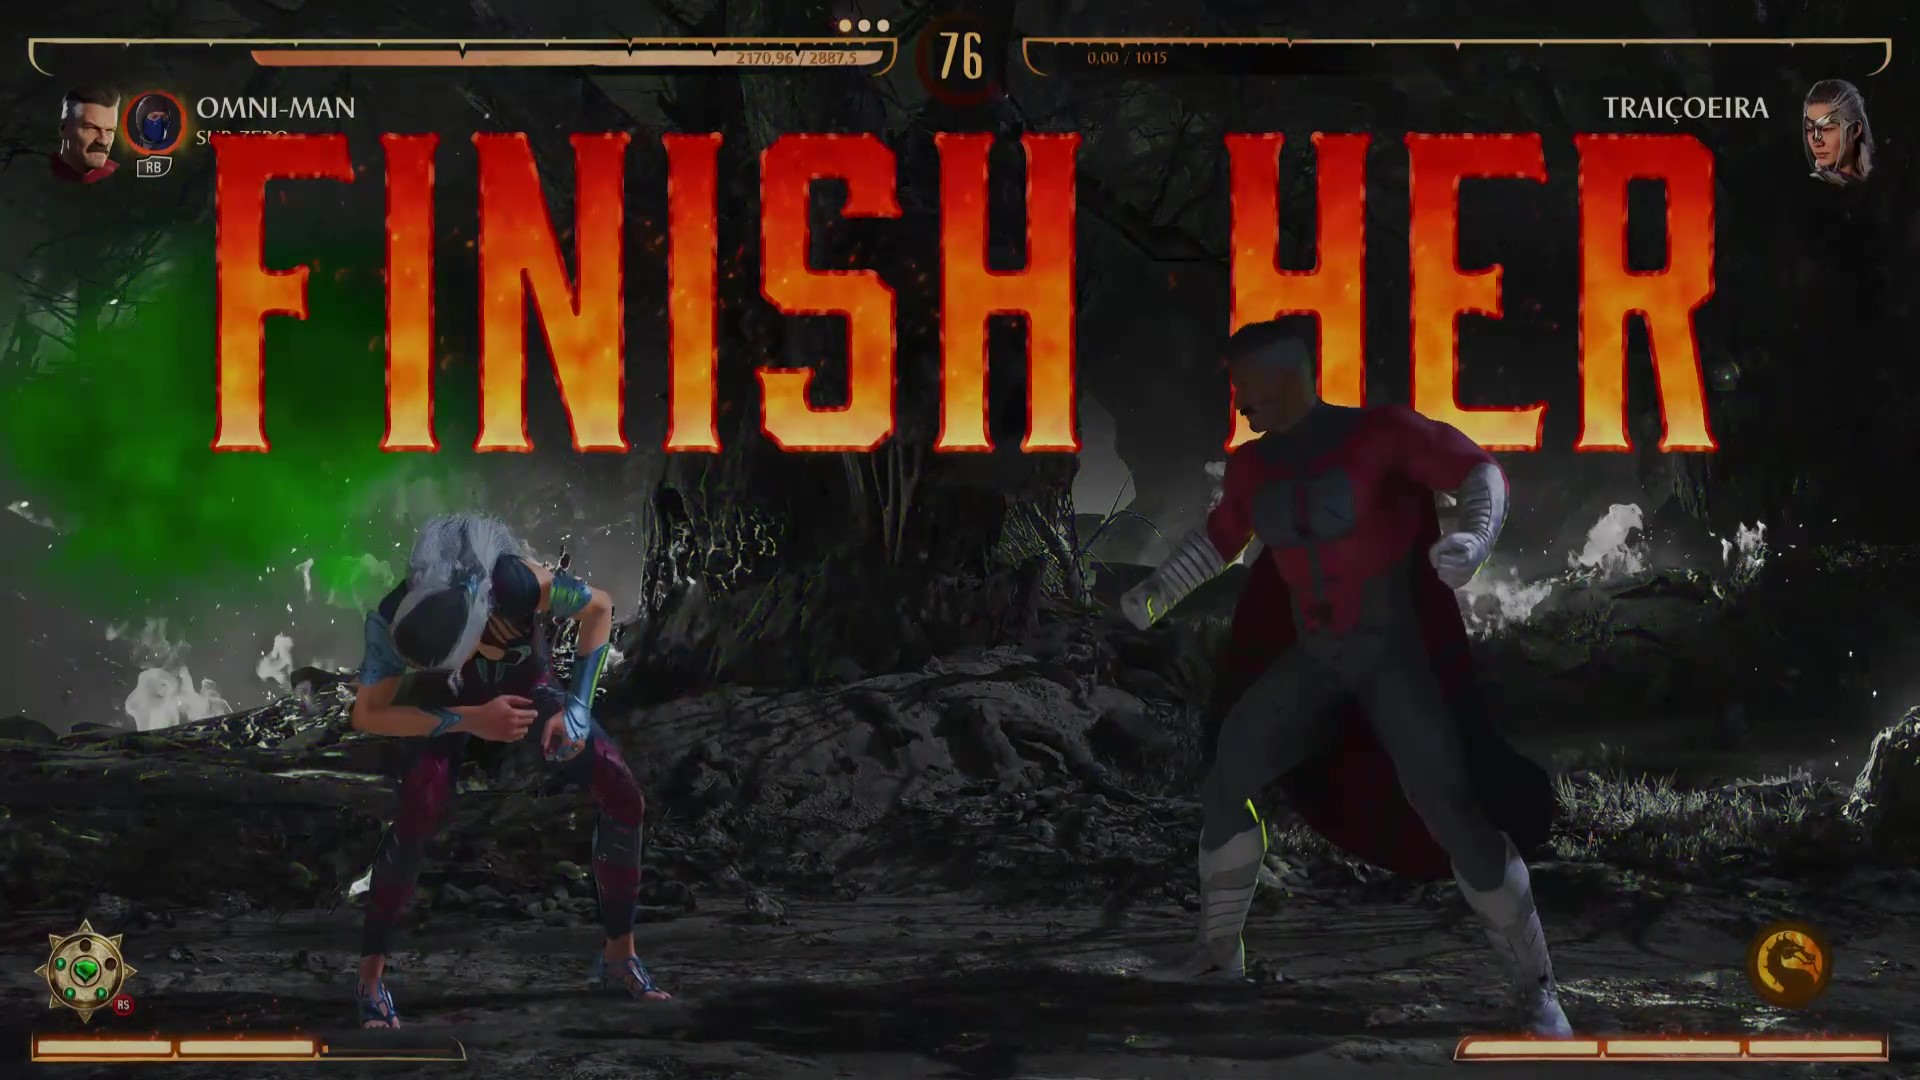 Vídeo do dia: Mortal Kombat no gogó